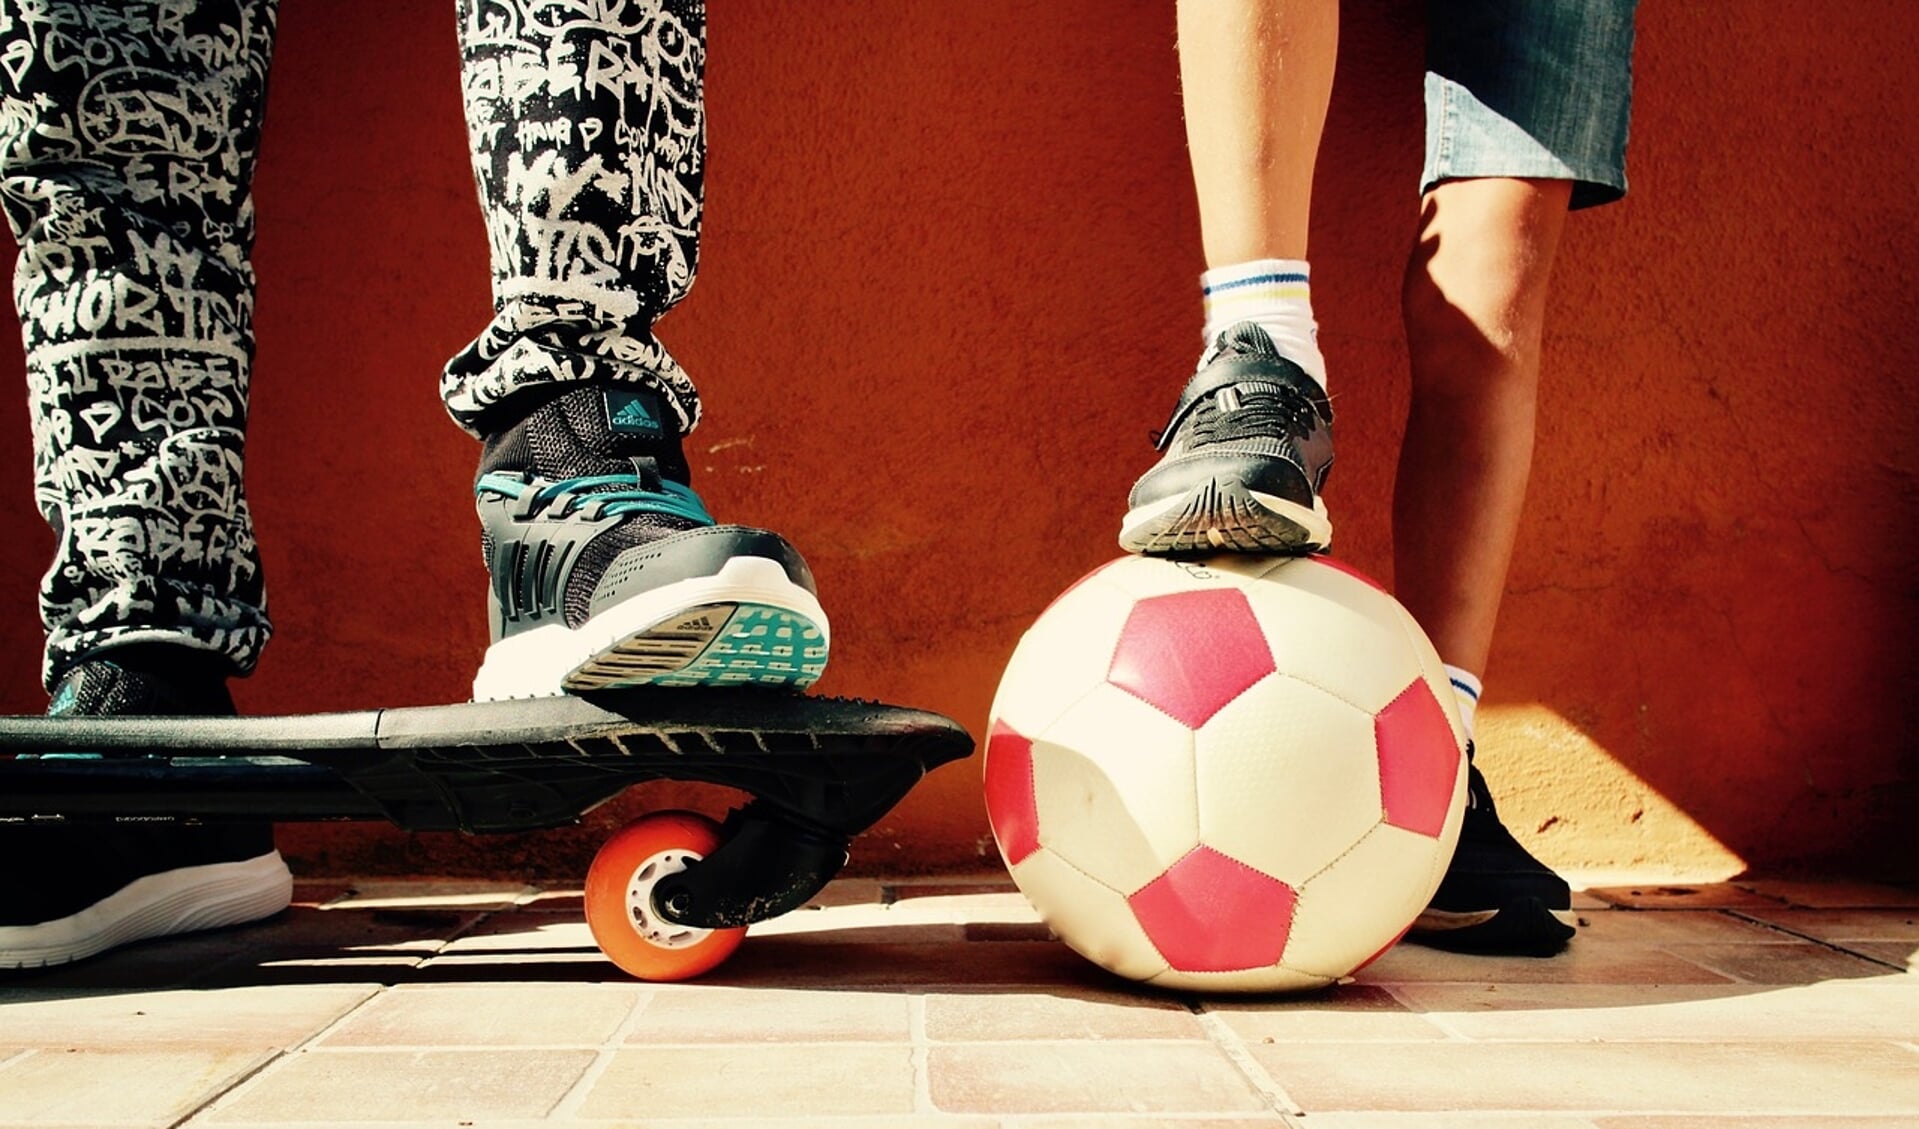 Lekker buiten spelen, voetballen, kunstjes met je skateboard doen, stoepkrijten: het kan allemaal met de Buitenspeeldag.